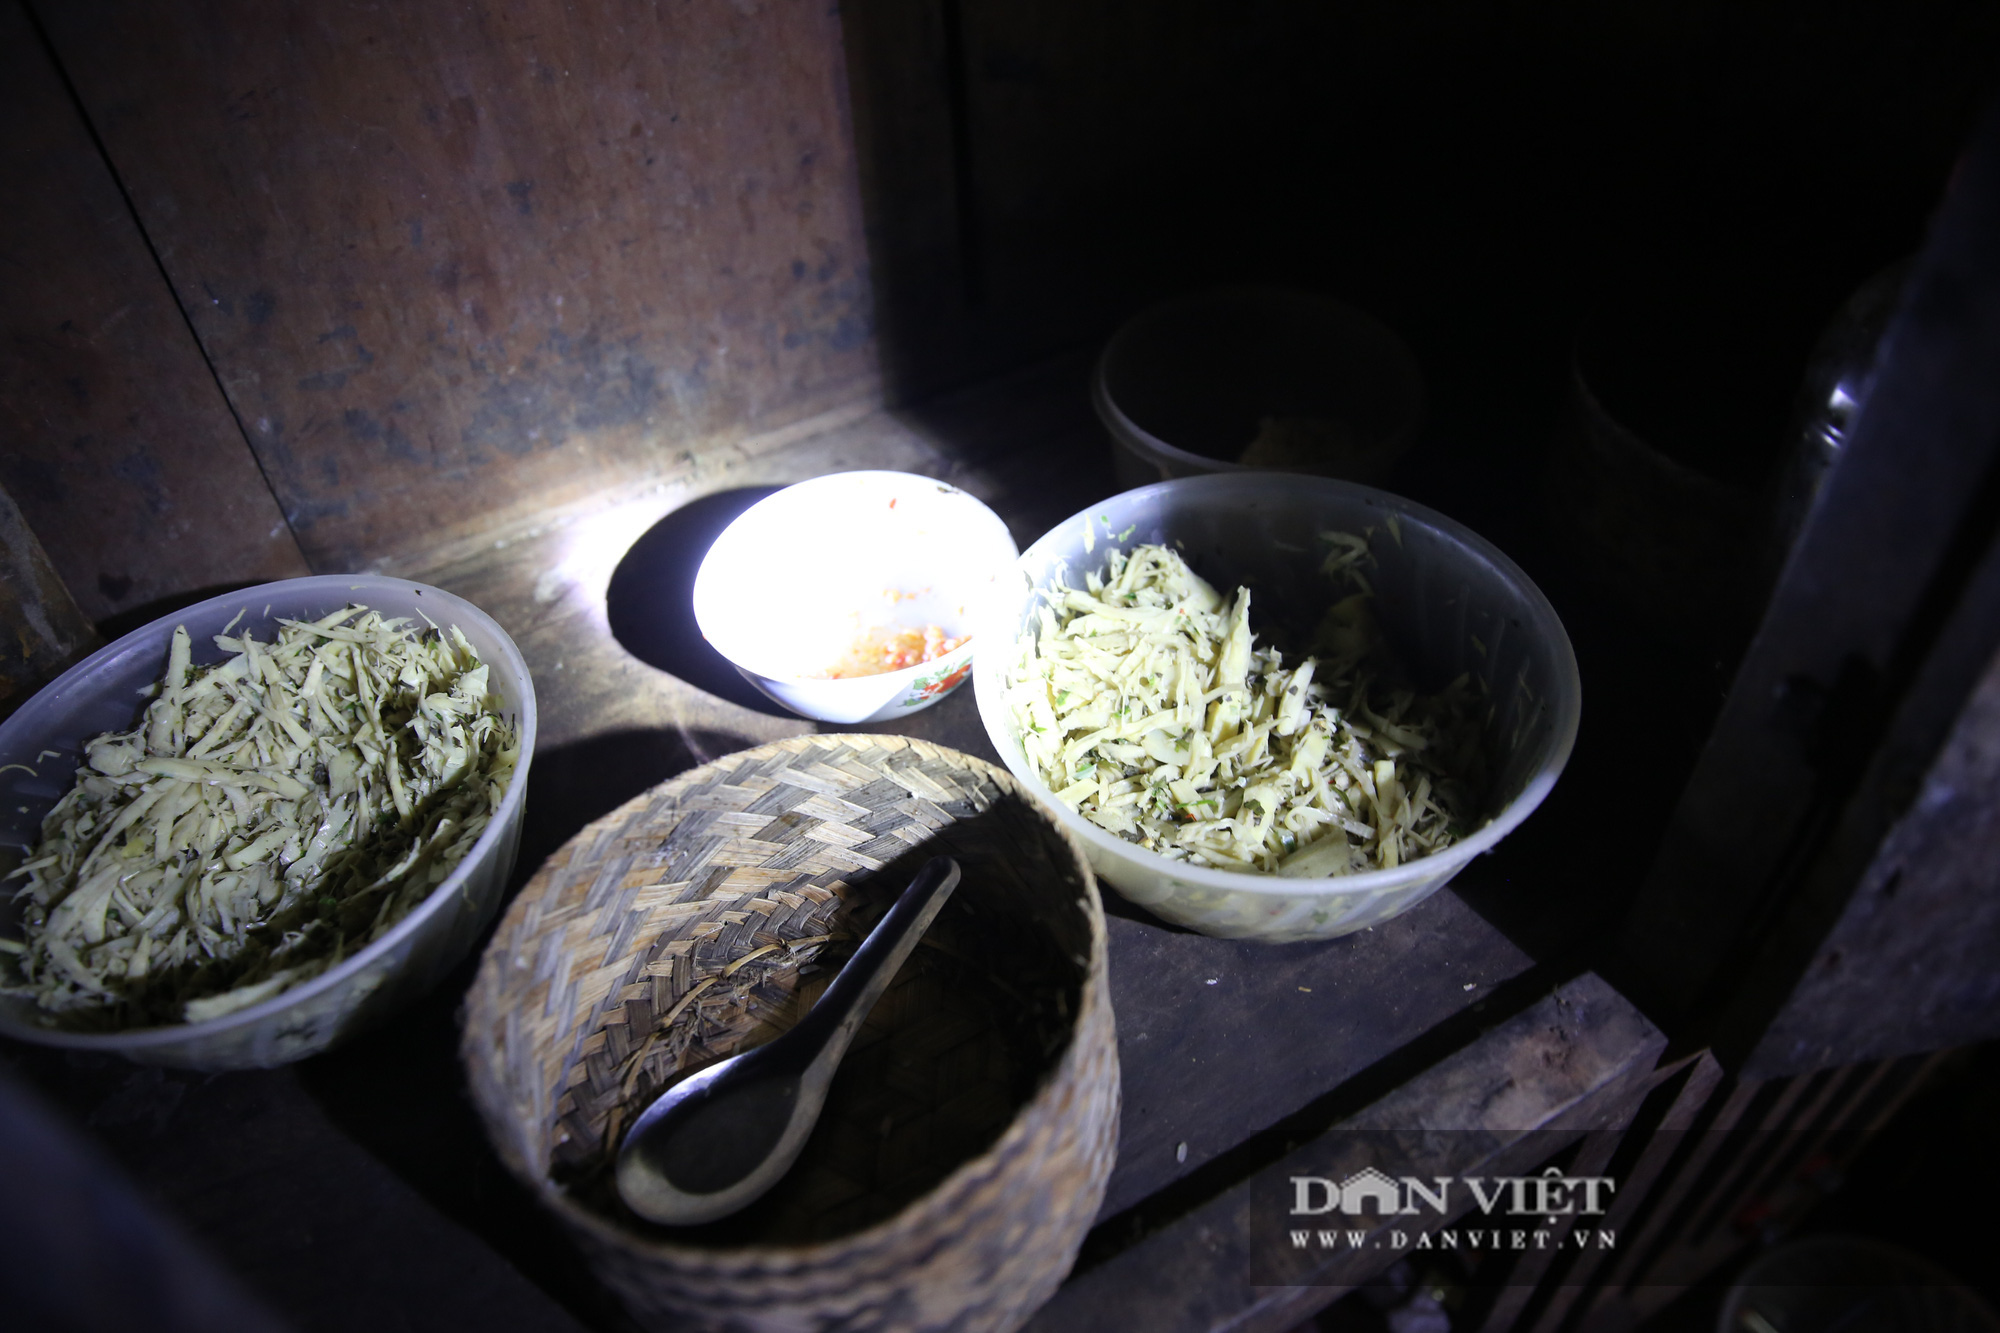 Nghẹn lòng những “bữa ăn” trên bản nghèo người Mông - Ảnh 5.